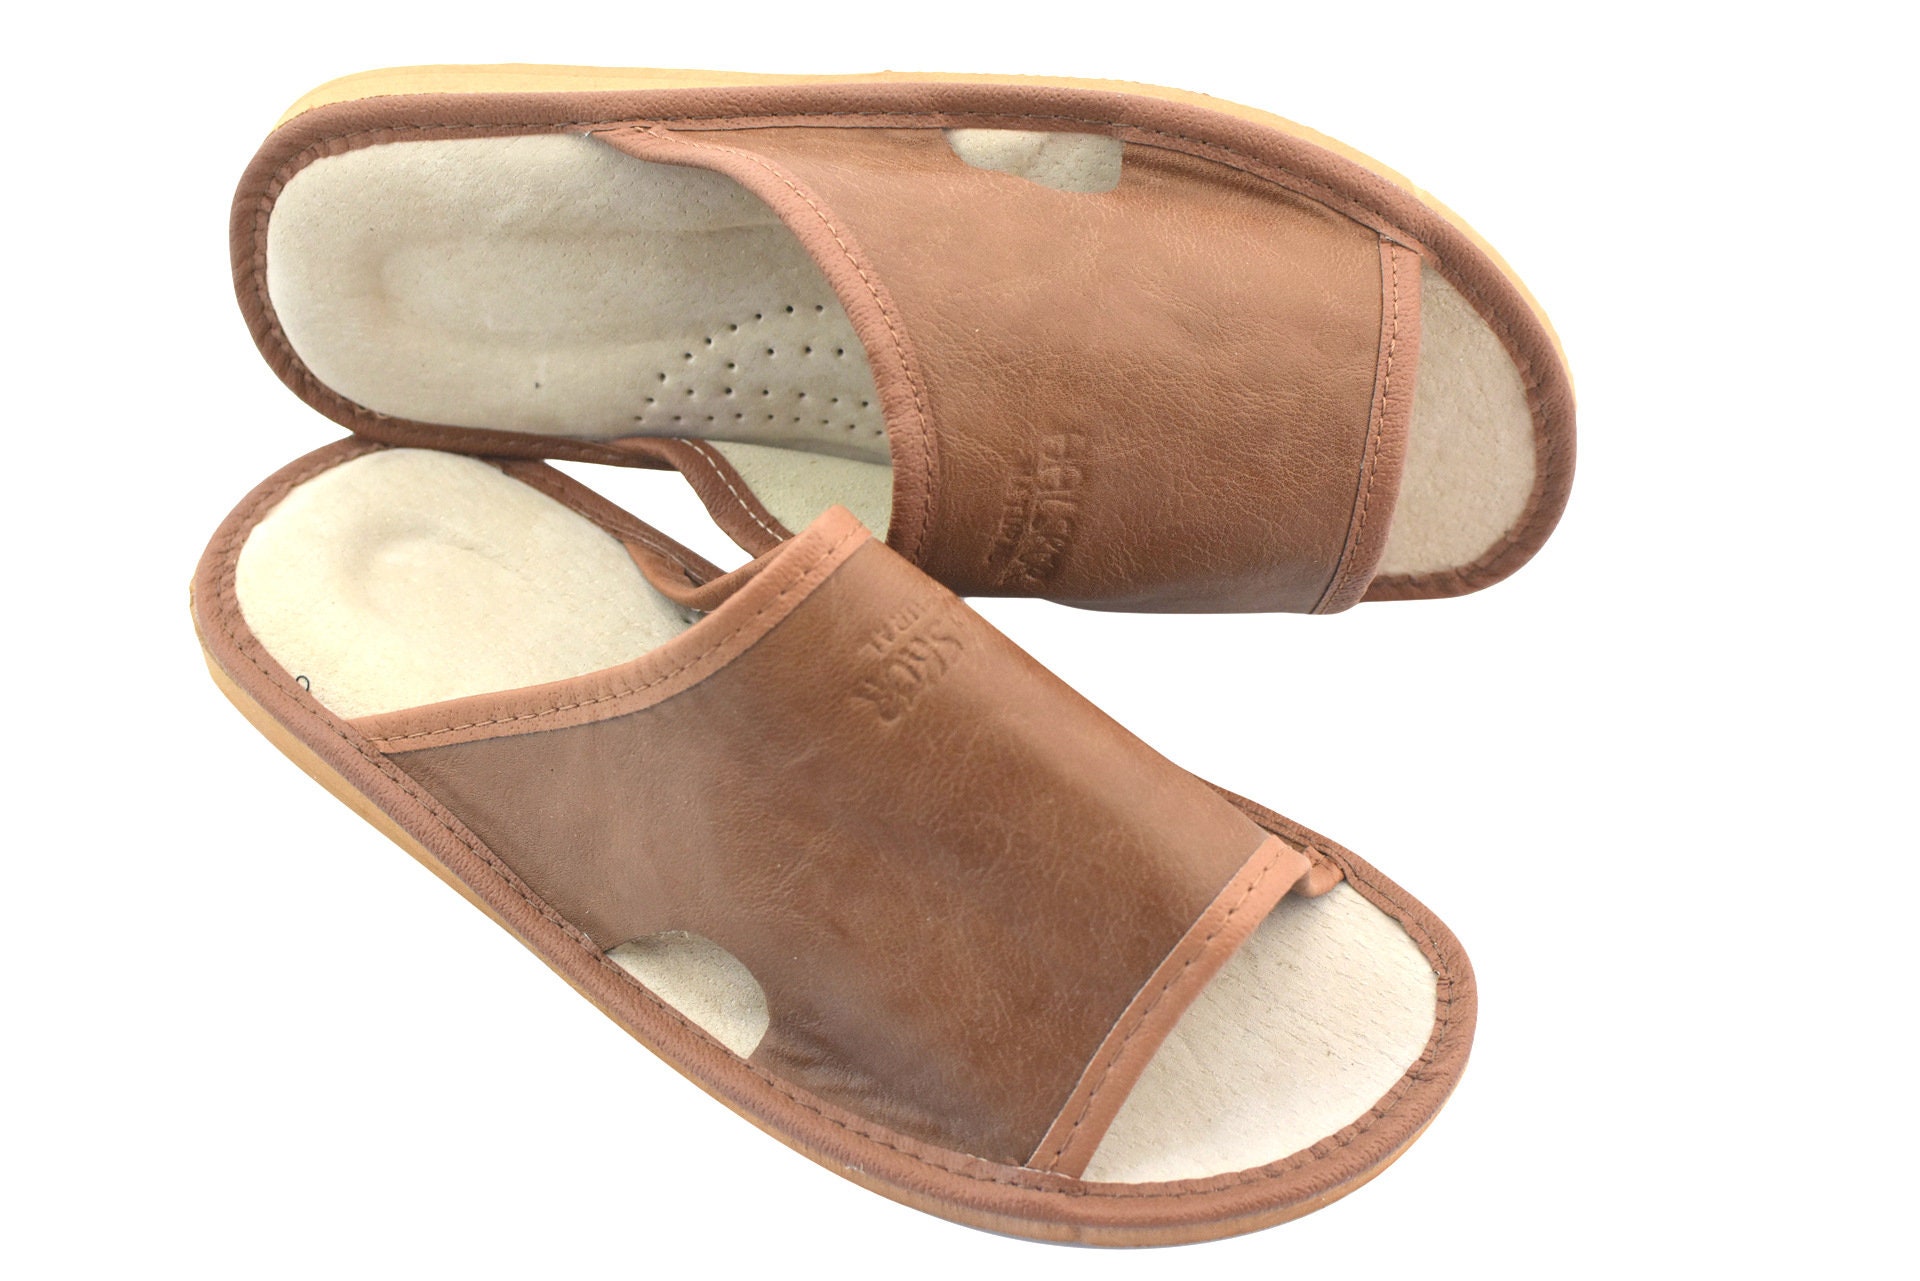 Men's slippers leather highlander flip flops la | Etsy